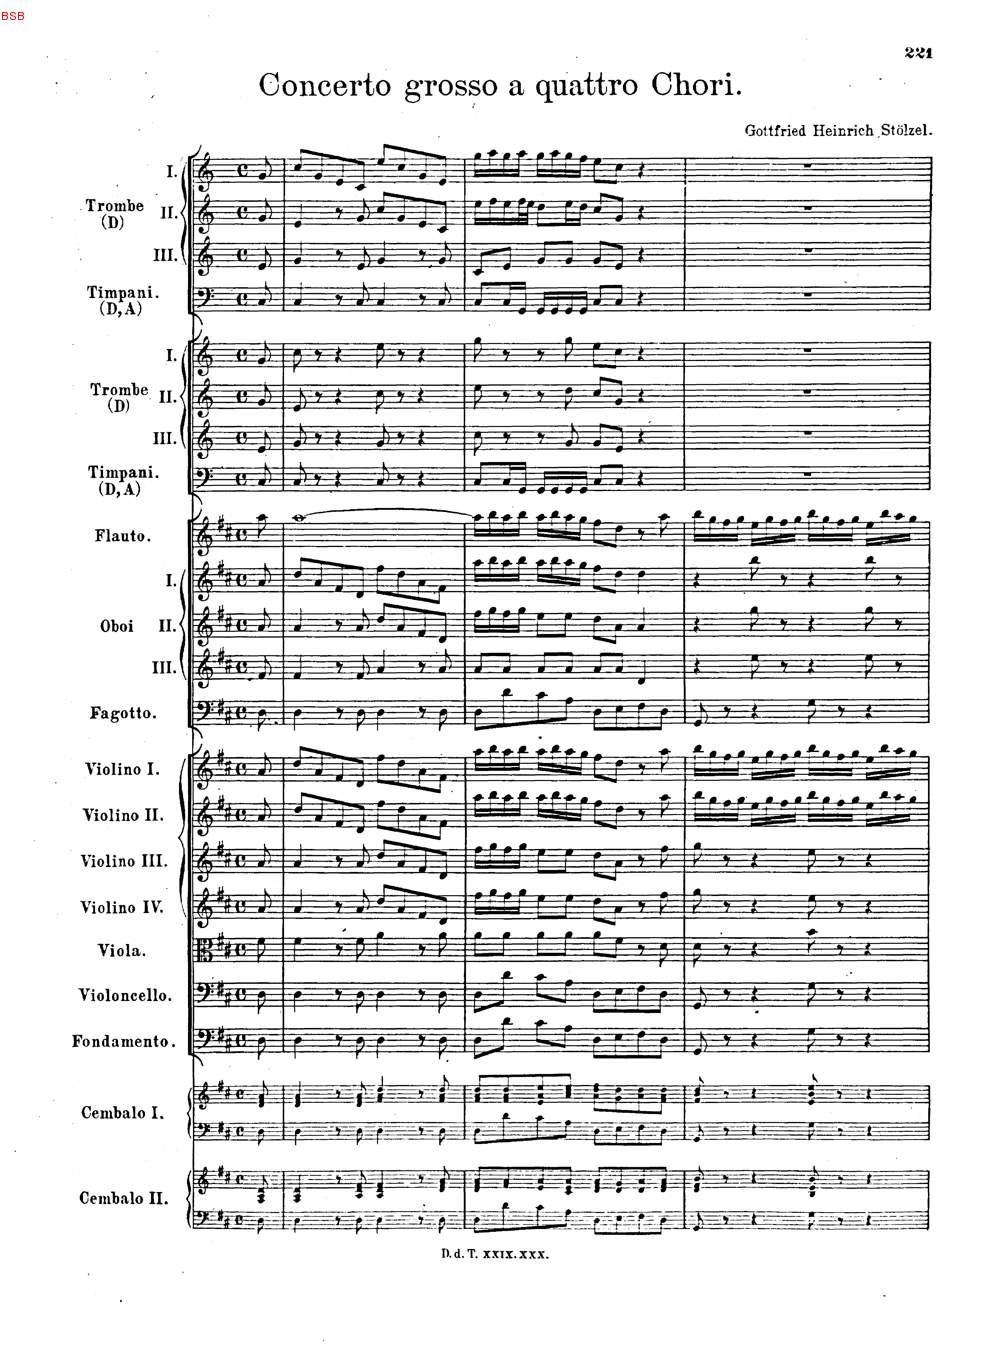 Gottfried Heinrich Stoelzel, Concerto grosso a quattro chori en ré majeur, page 1 de la partition, site https://daten.digitale-sammlungen.de/